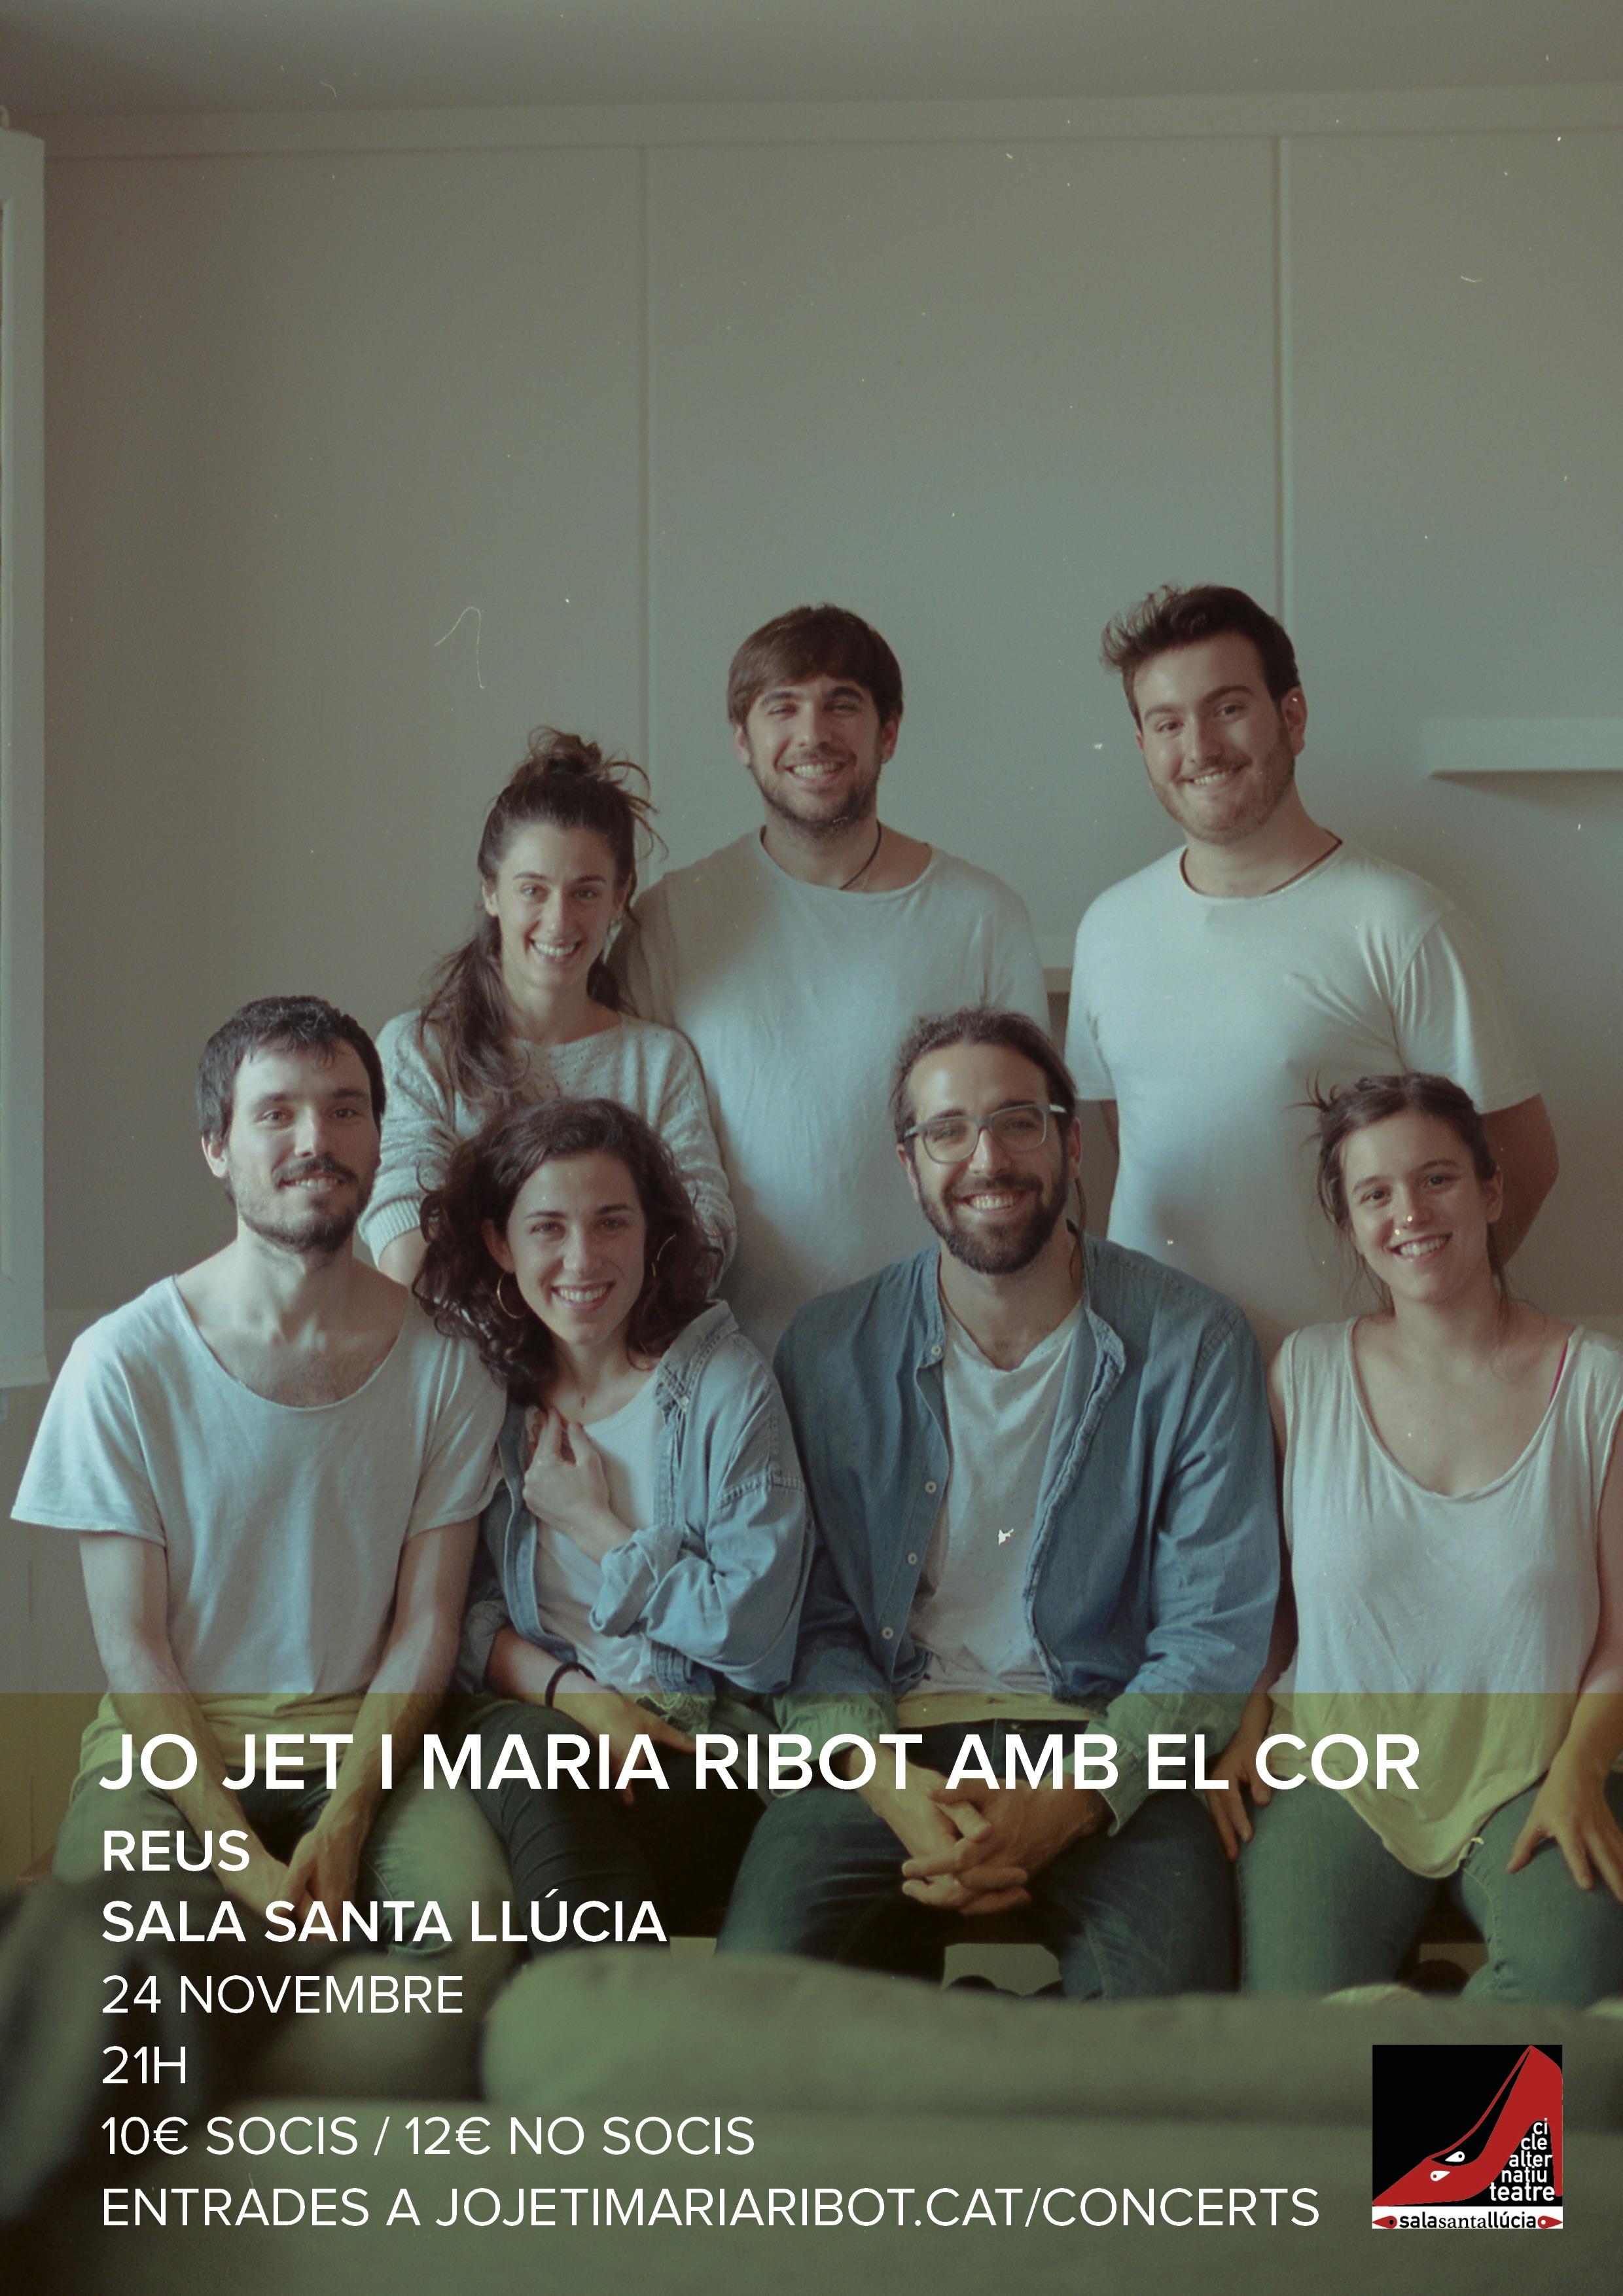 ACCENTS 2018 - Presentació del seu nou disc Jo Jet i Maria Ribot amb el cor